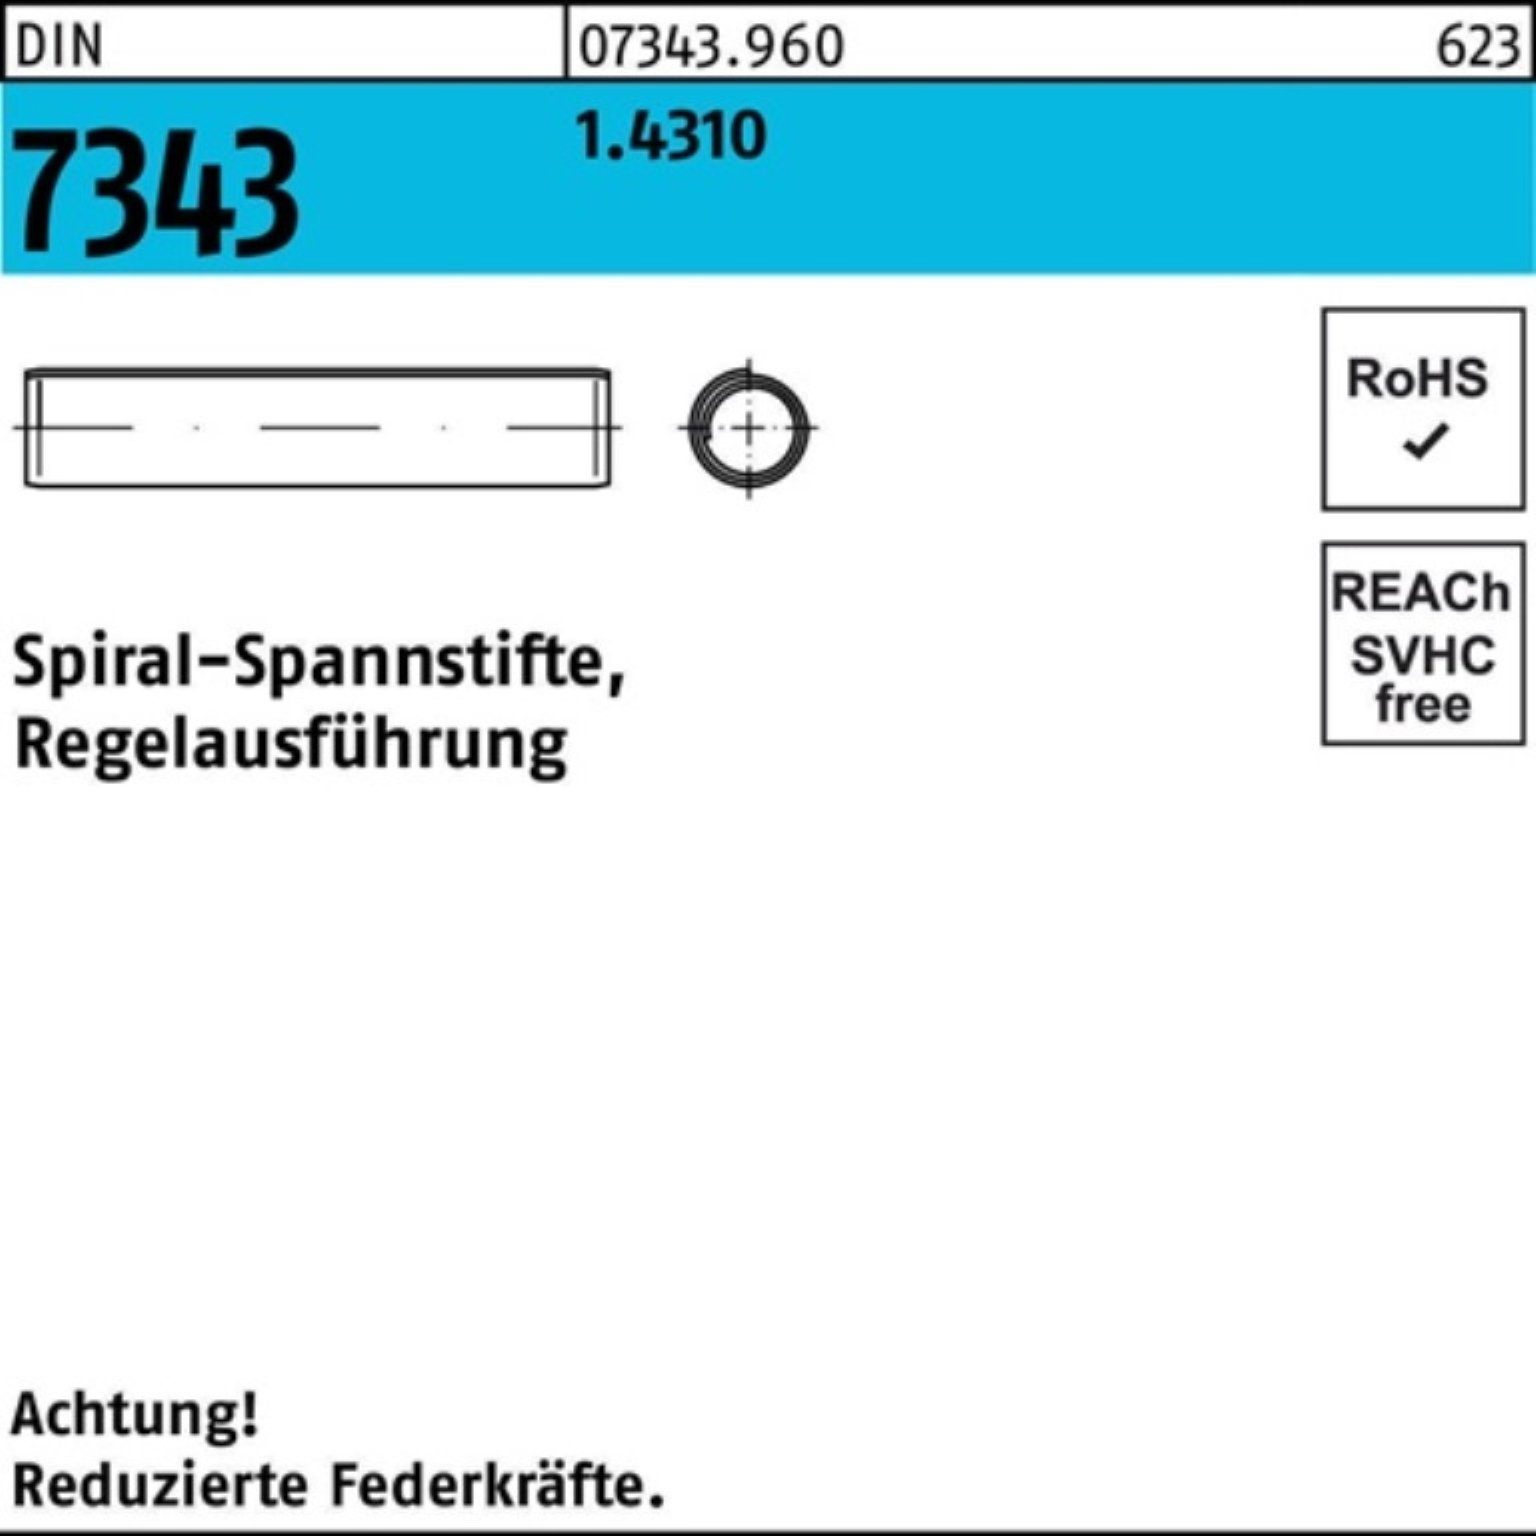 Reyher Spannstift DIN Spiralspannstift 28 Pack 500er 5x 1.4310 Regelausf. 8750 7343/ISO